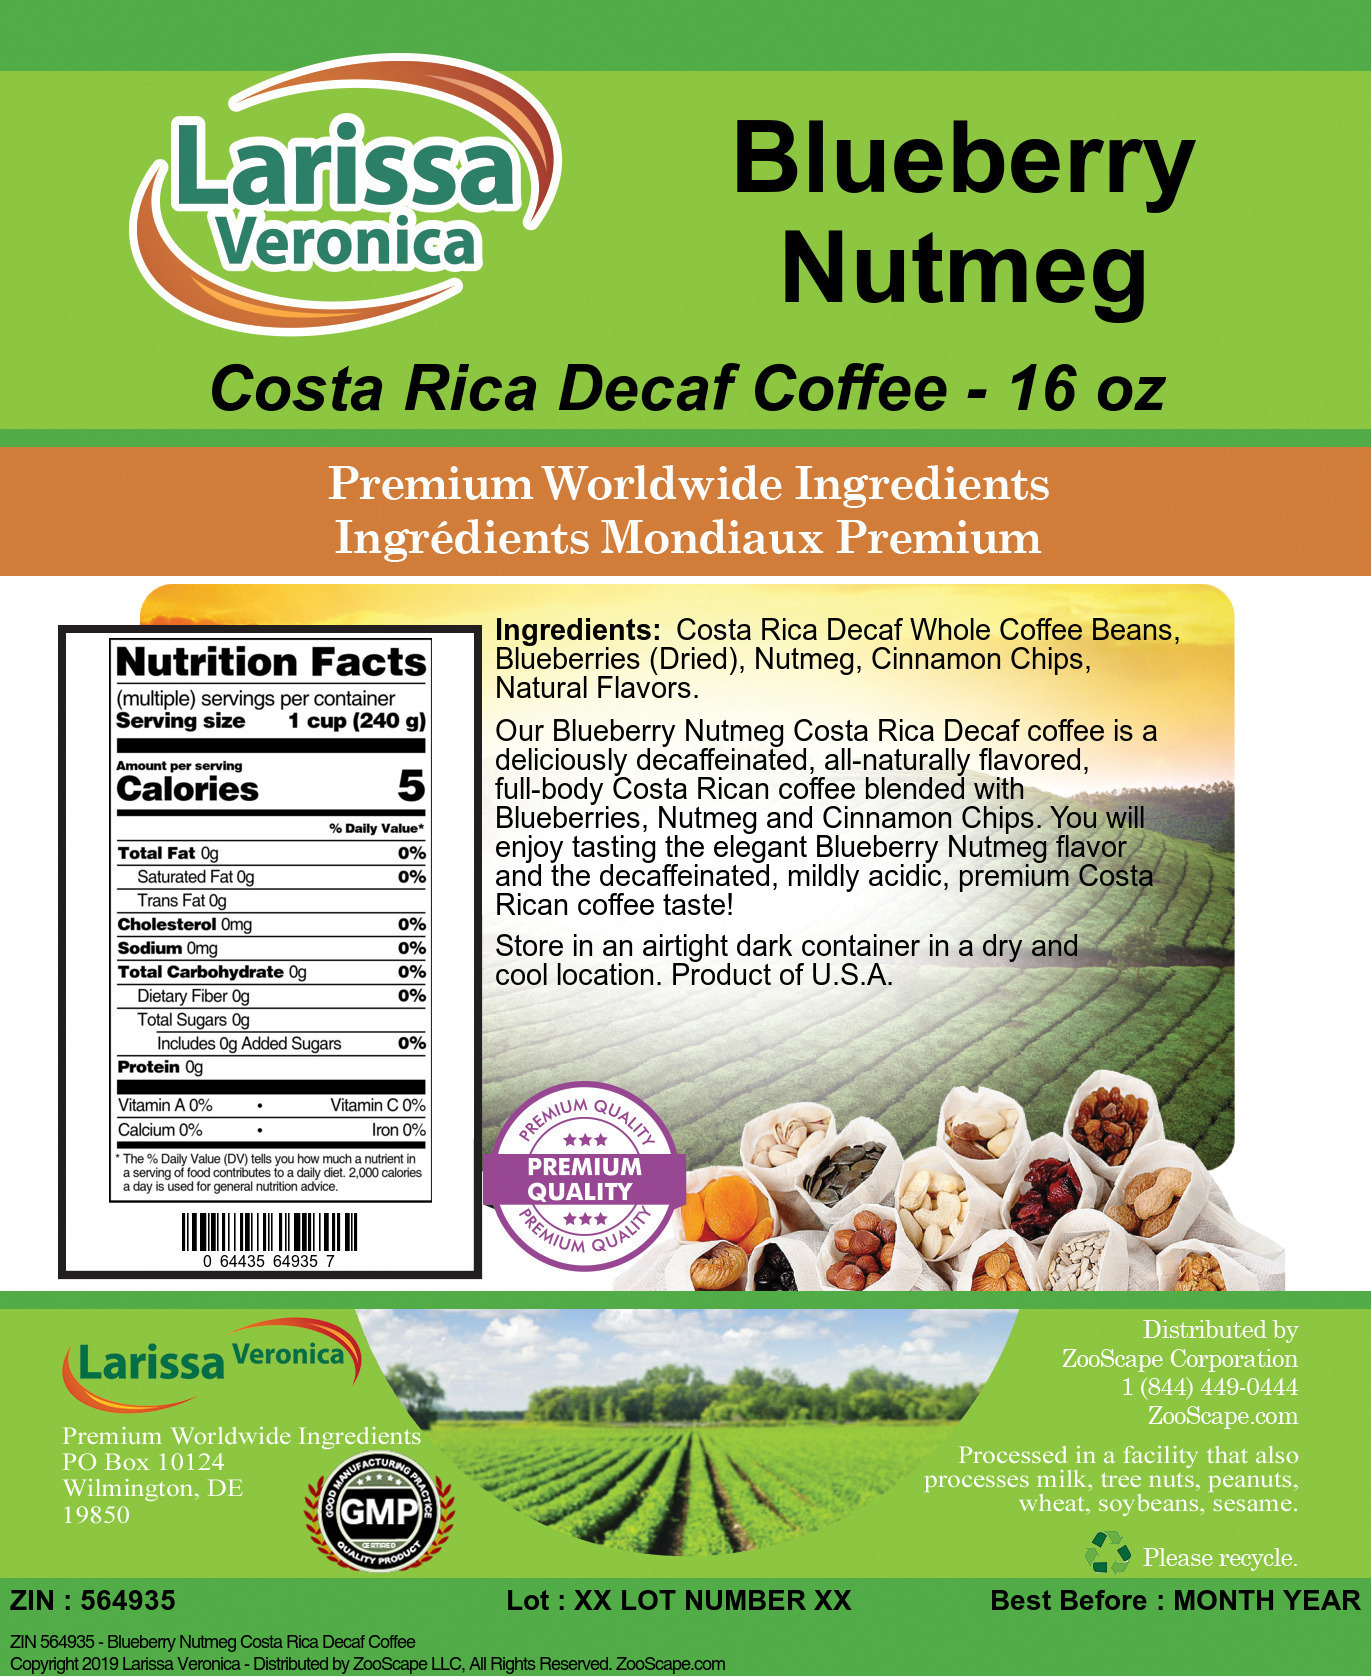 Blueberry Nutmeg Costa Rica Decaf Coffee - Label